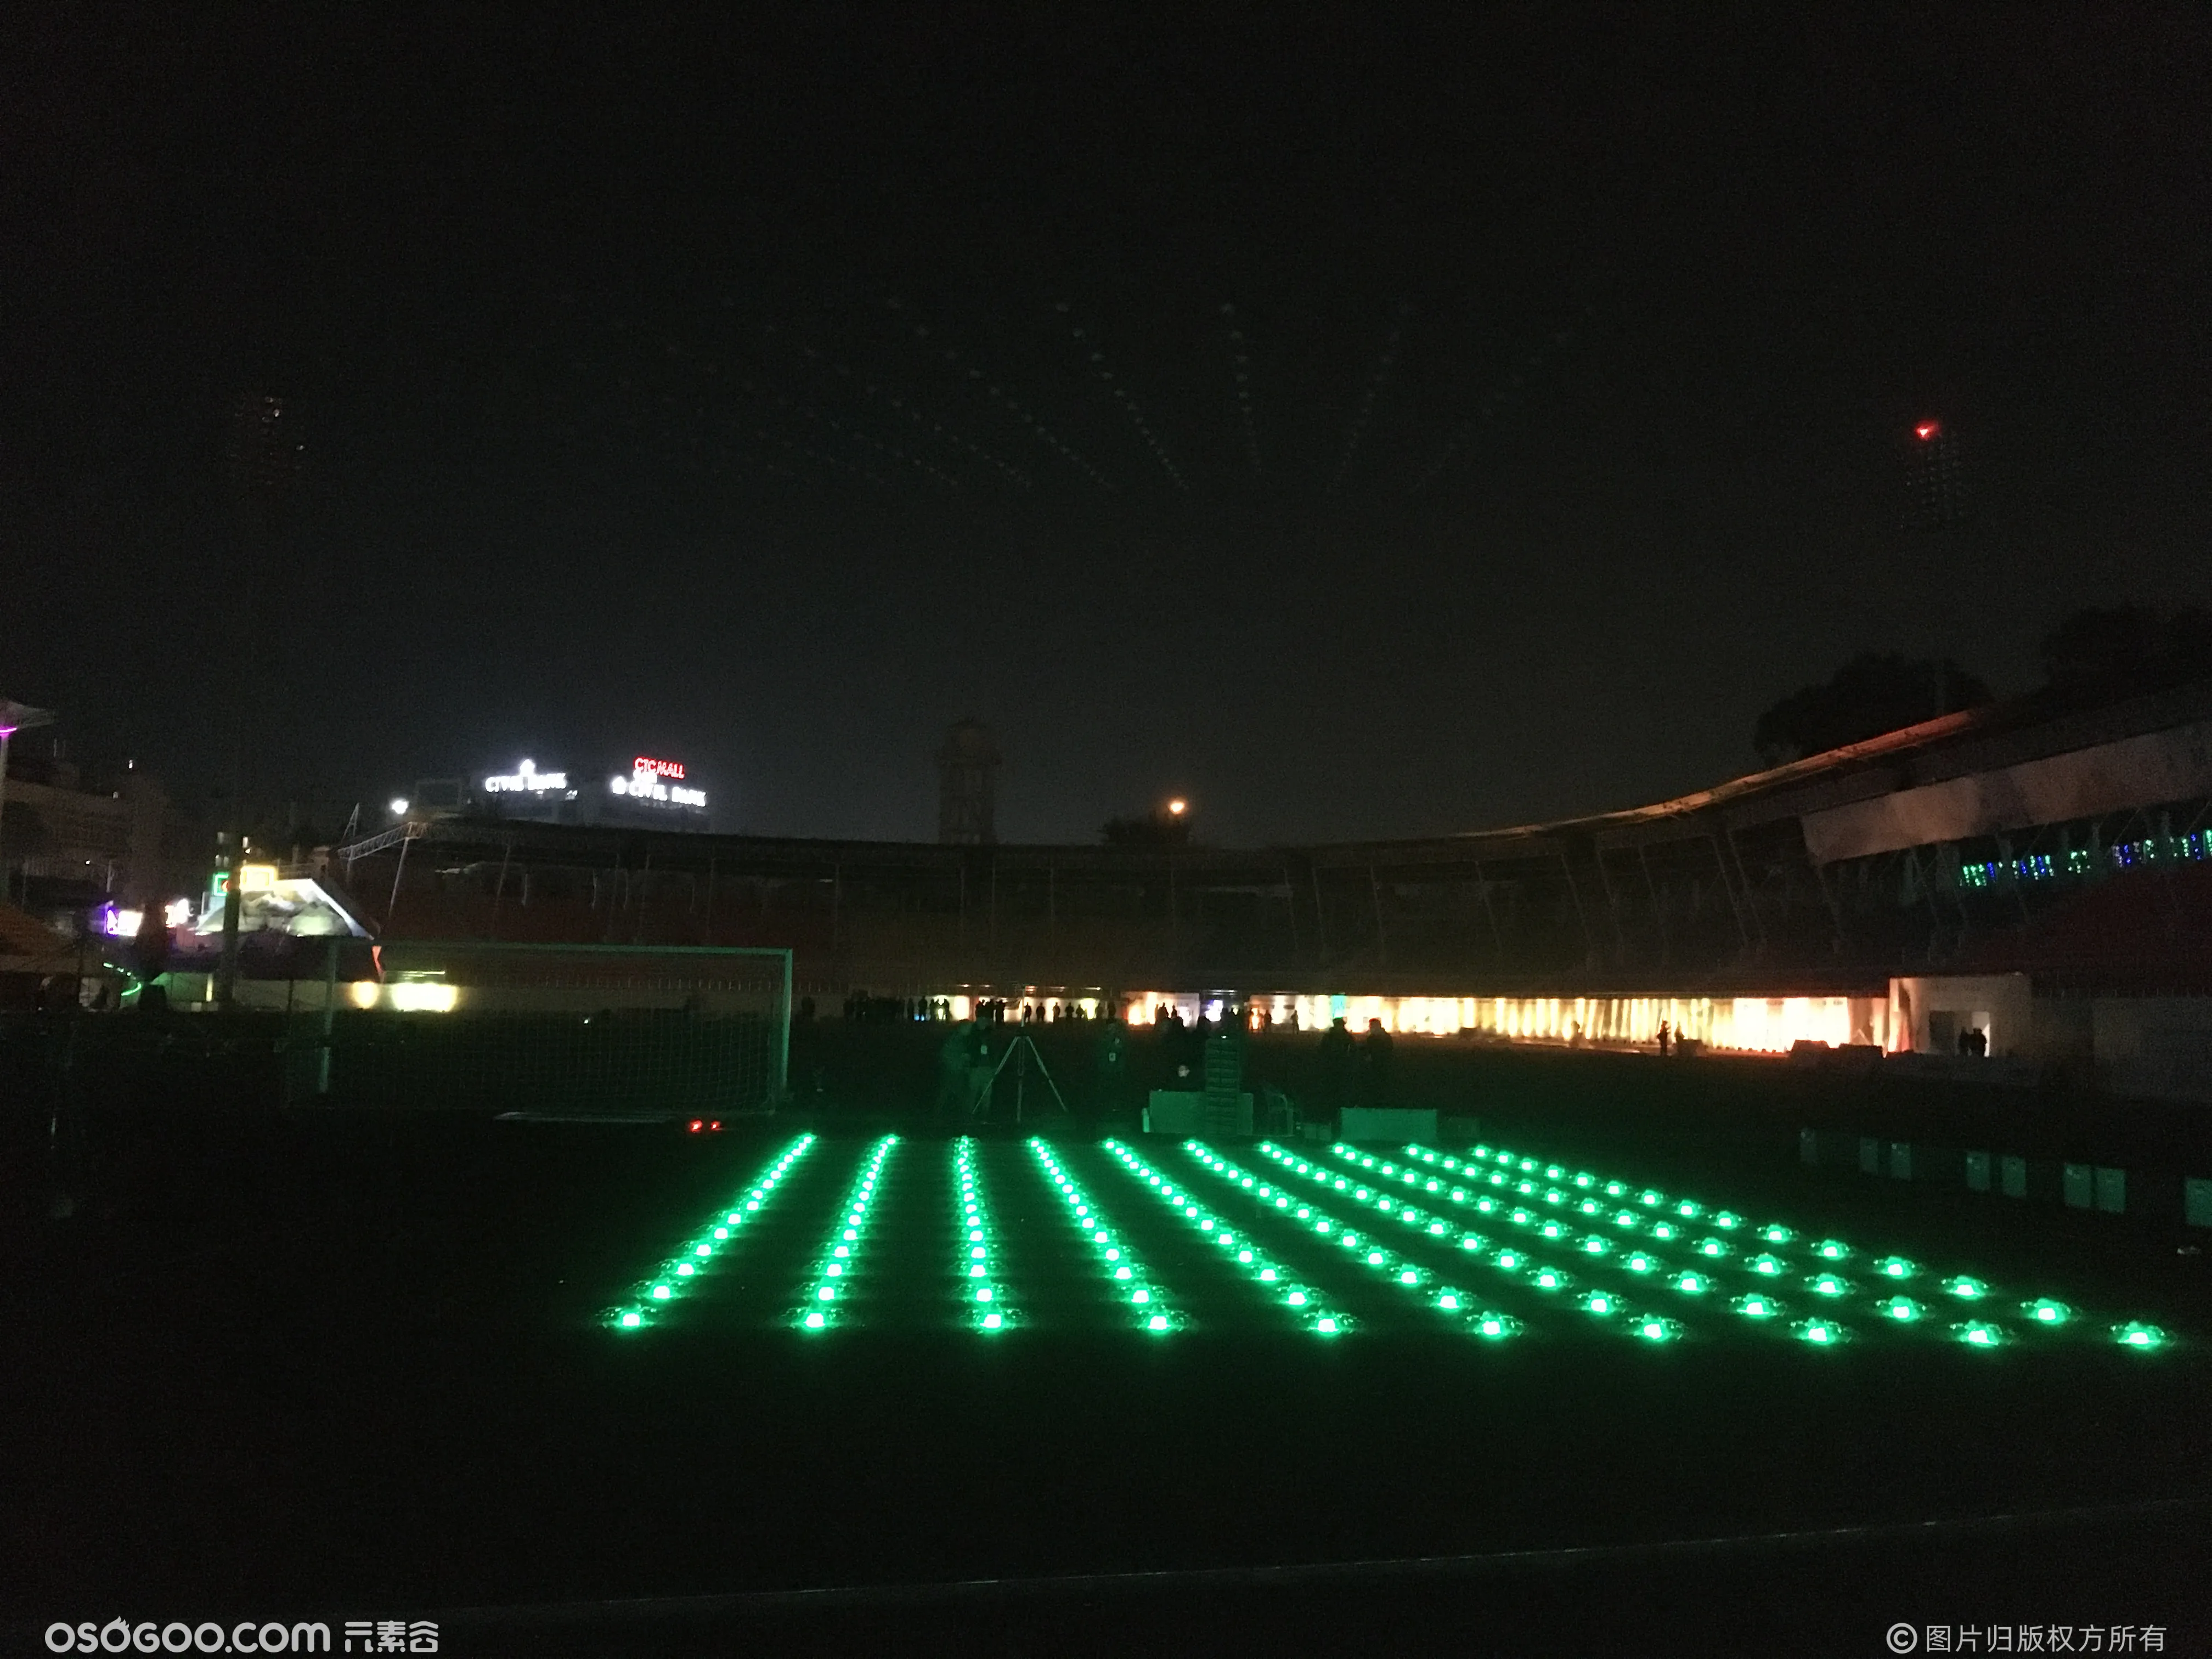 9月18陜西铜川 中骏集团商业中心150台无人机闪亮夜空秀